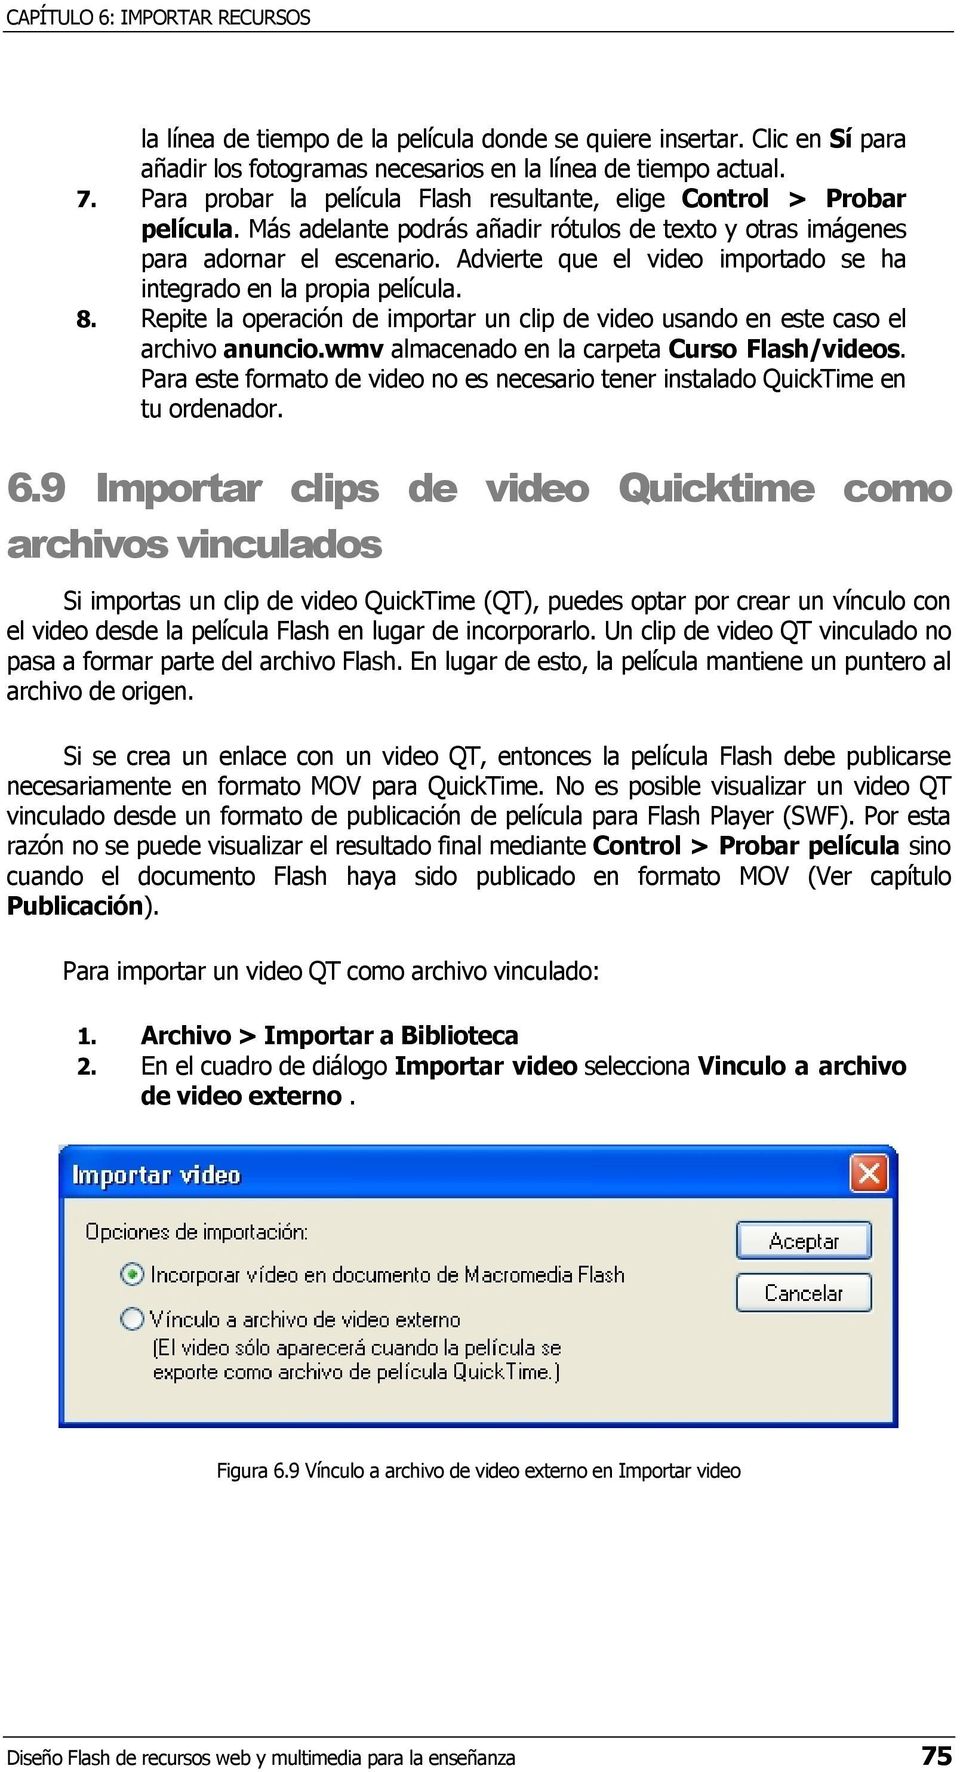 Advierte que el video importado se ha integrado en la propia película. 8. Repite la operación de importar un clip de video usando en este caso el archivo anuncio.